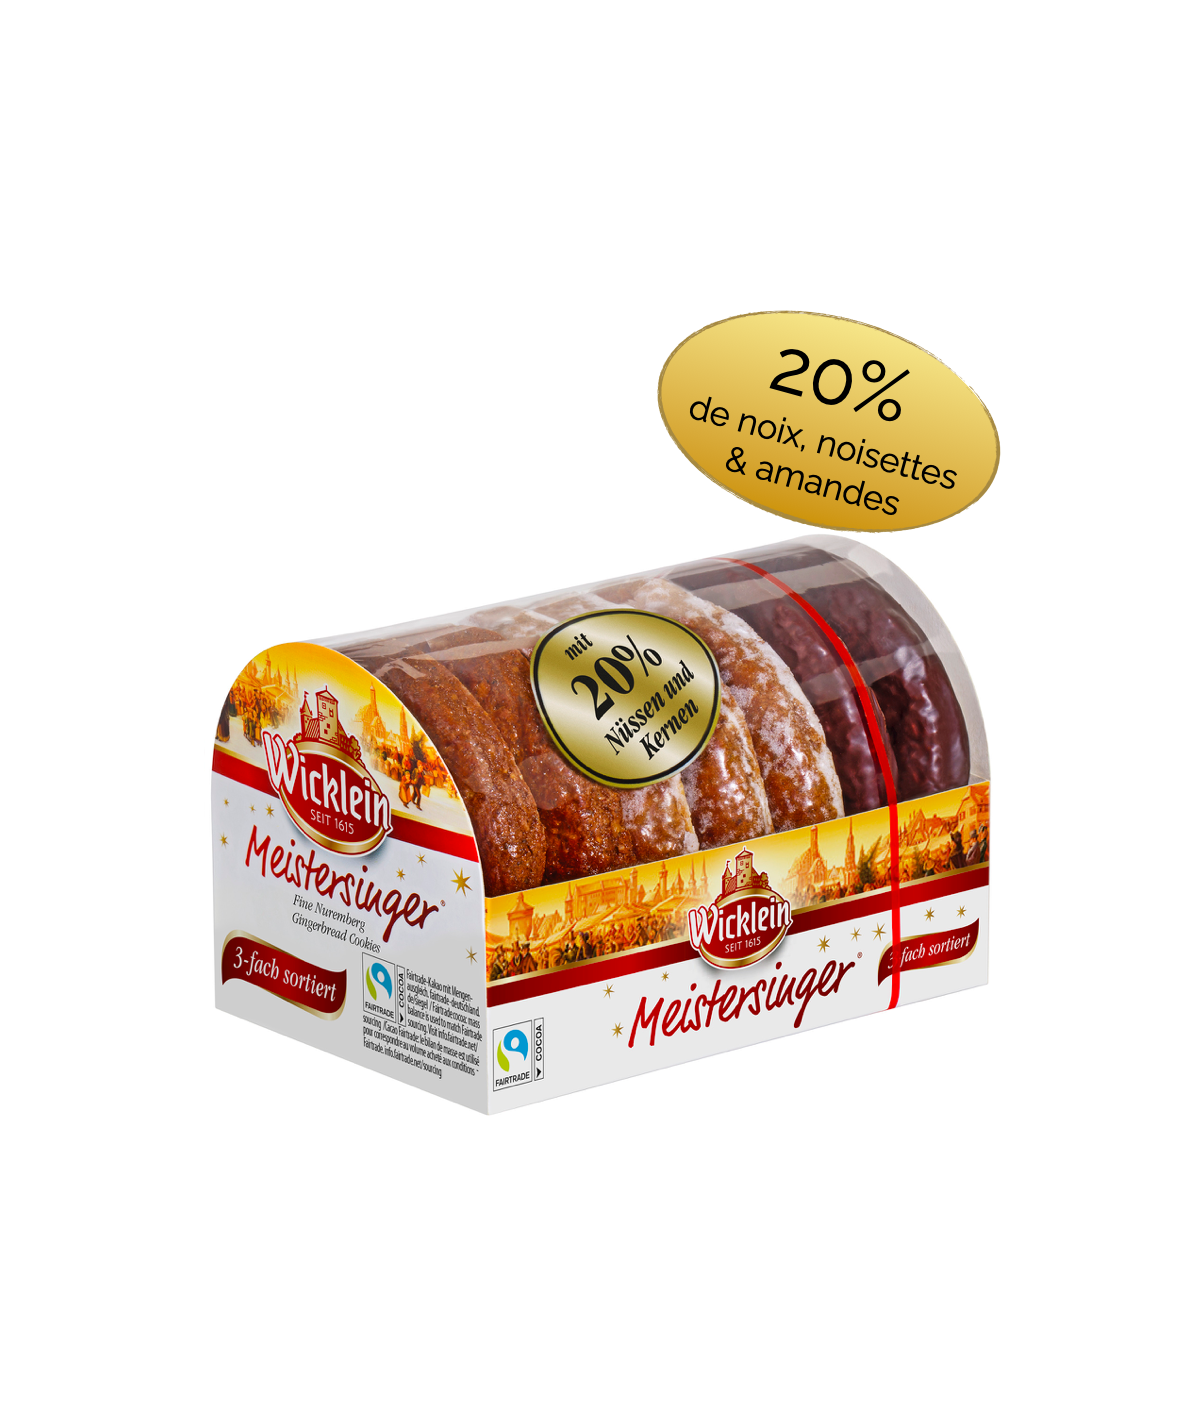 Pain d'épices Meistersinger 3 variétés Lebkuchen Wicklein 200g